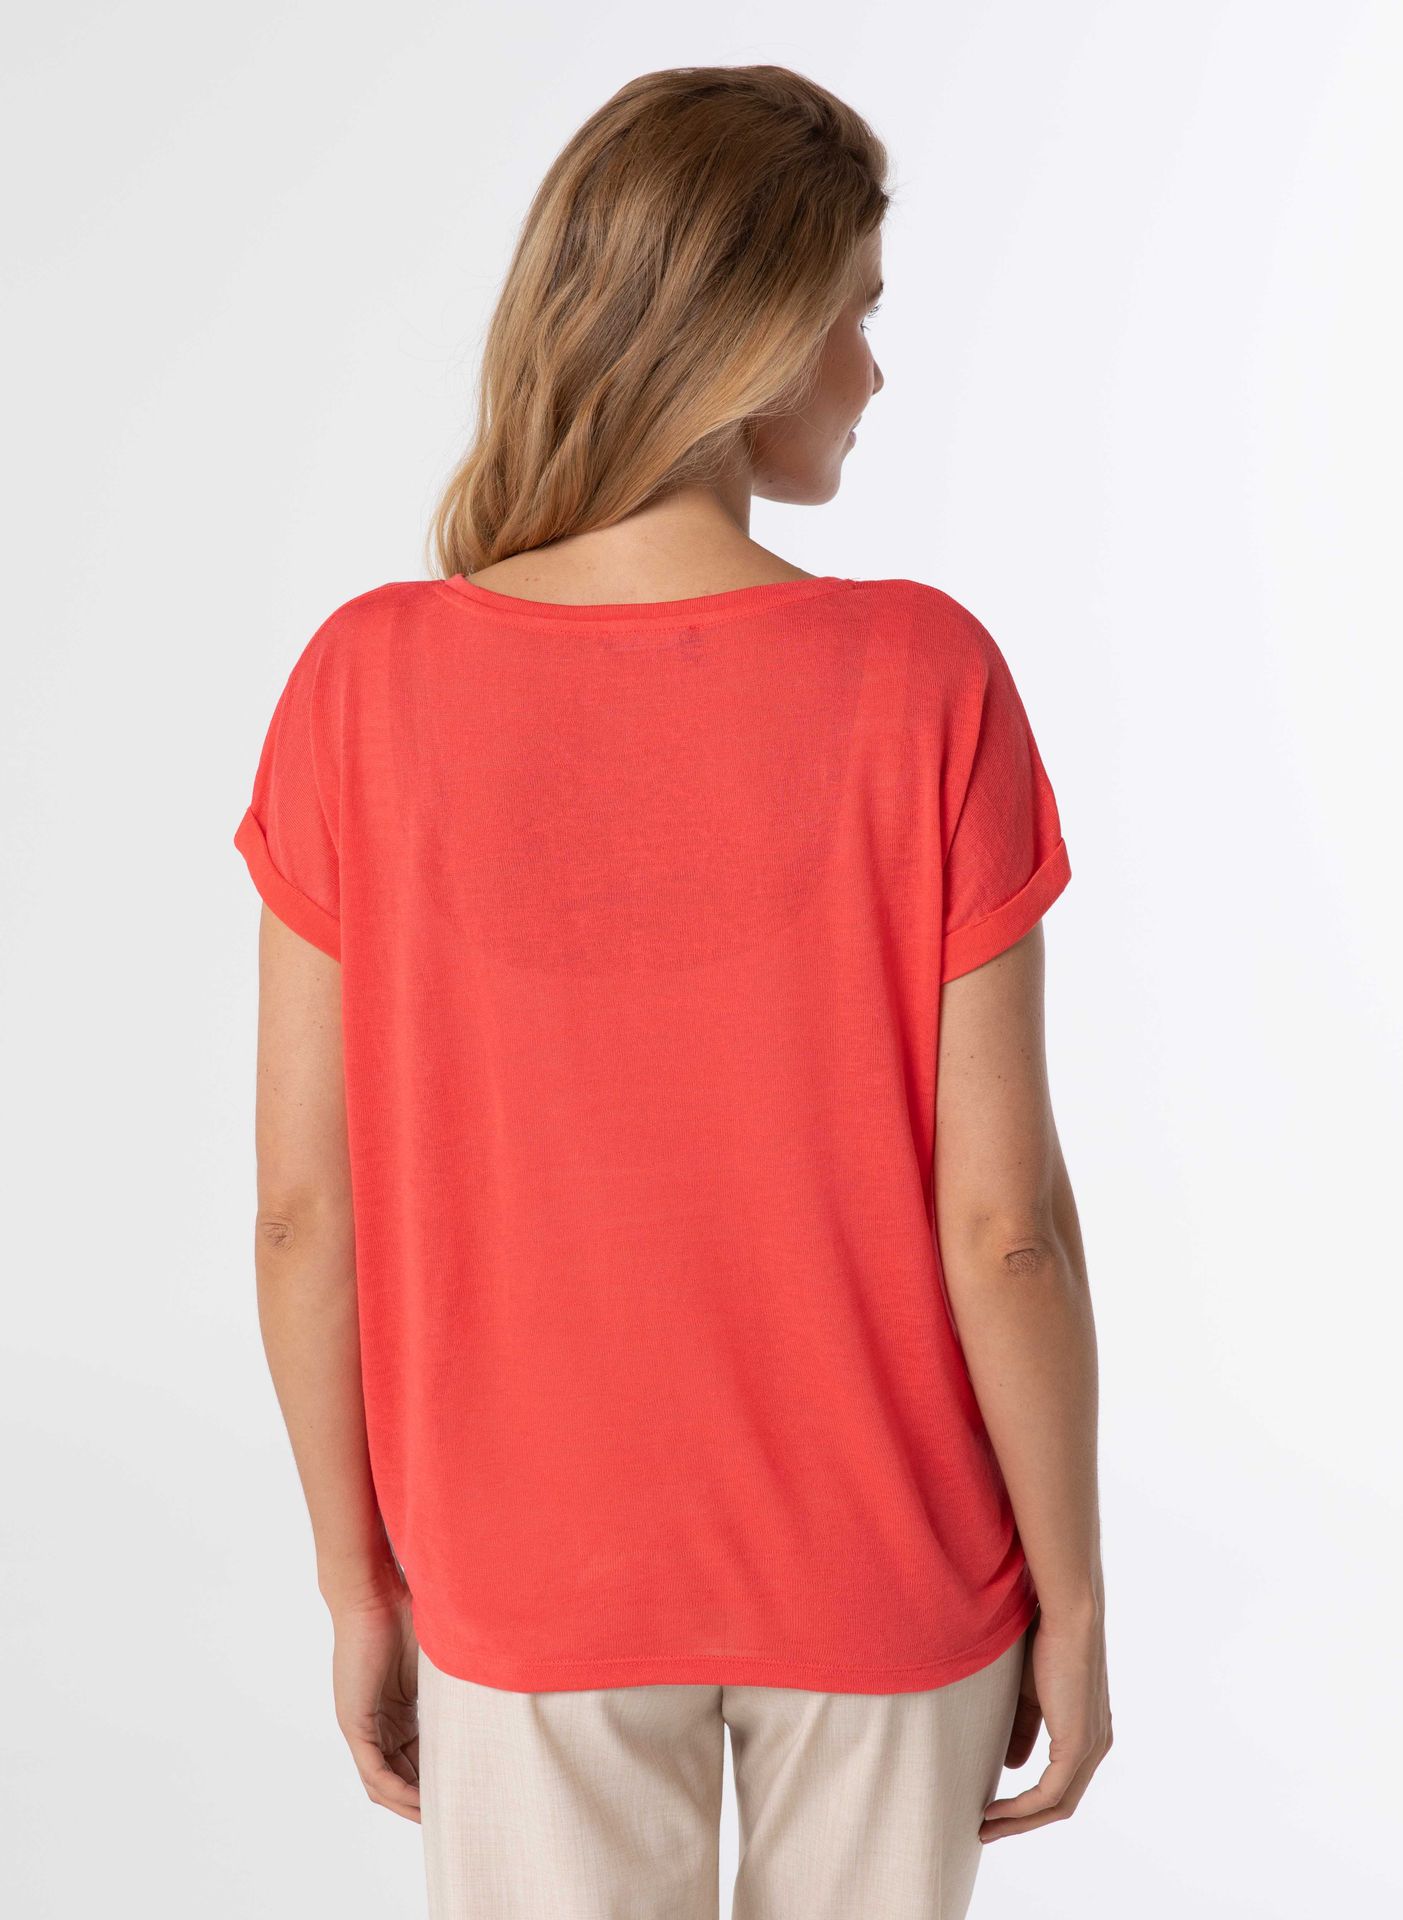 Norah Shirt roze coral 211185-706